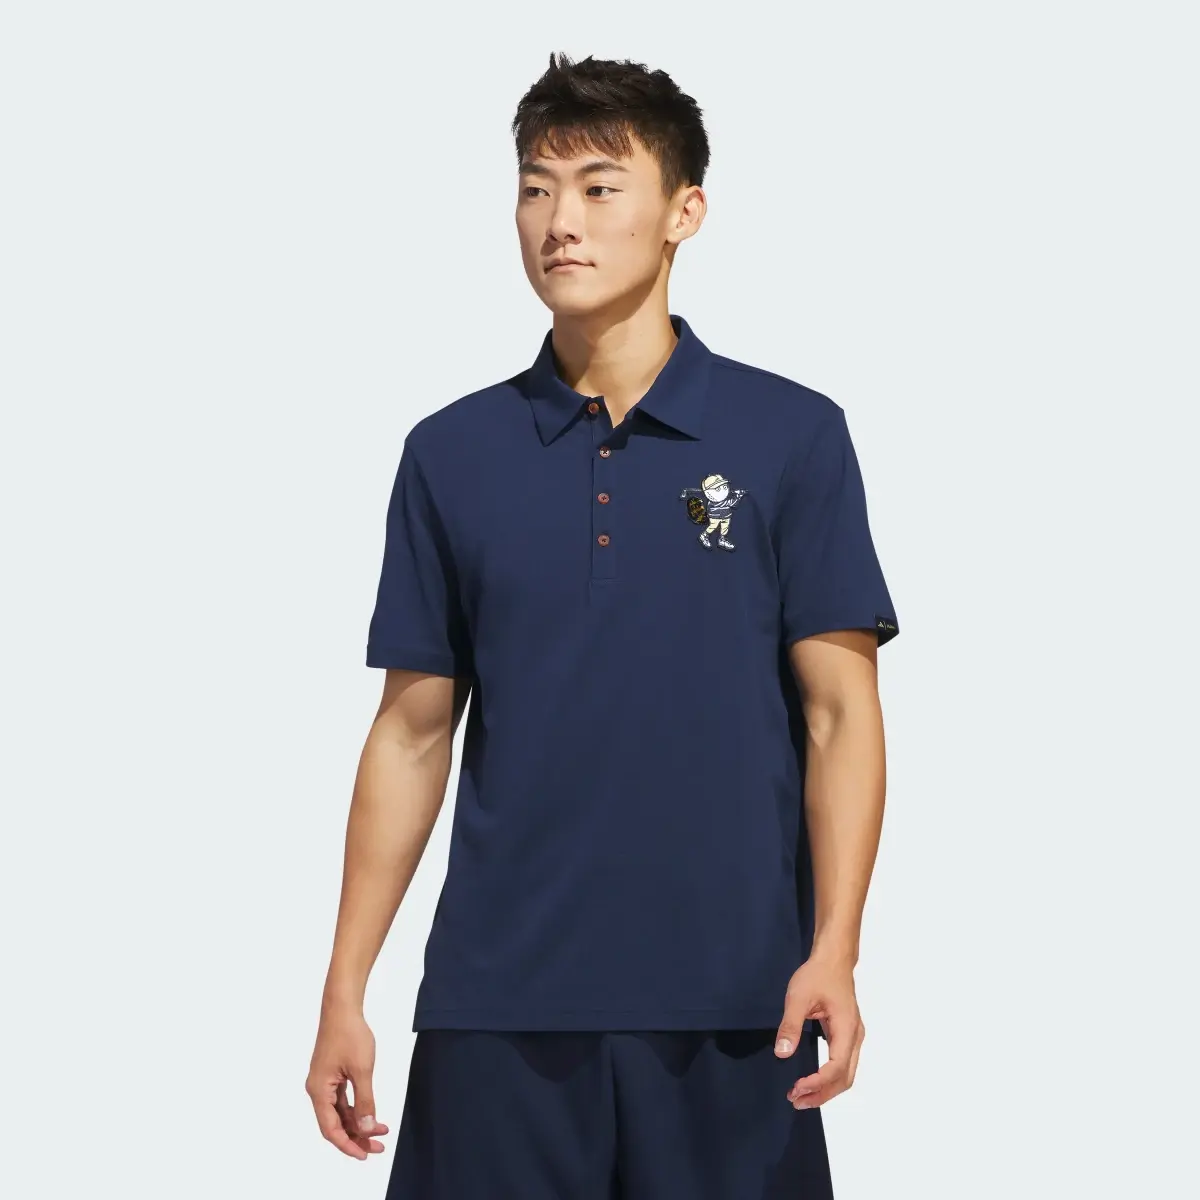 Adidas Koszulka Malbon Polo. 2